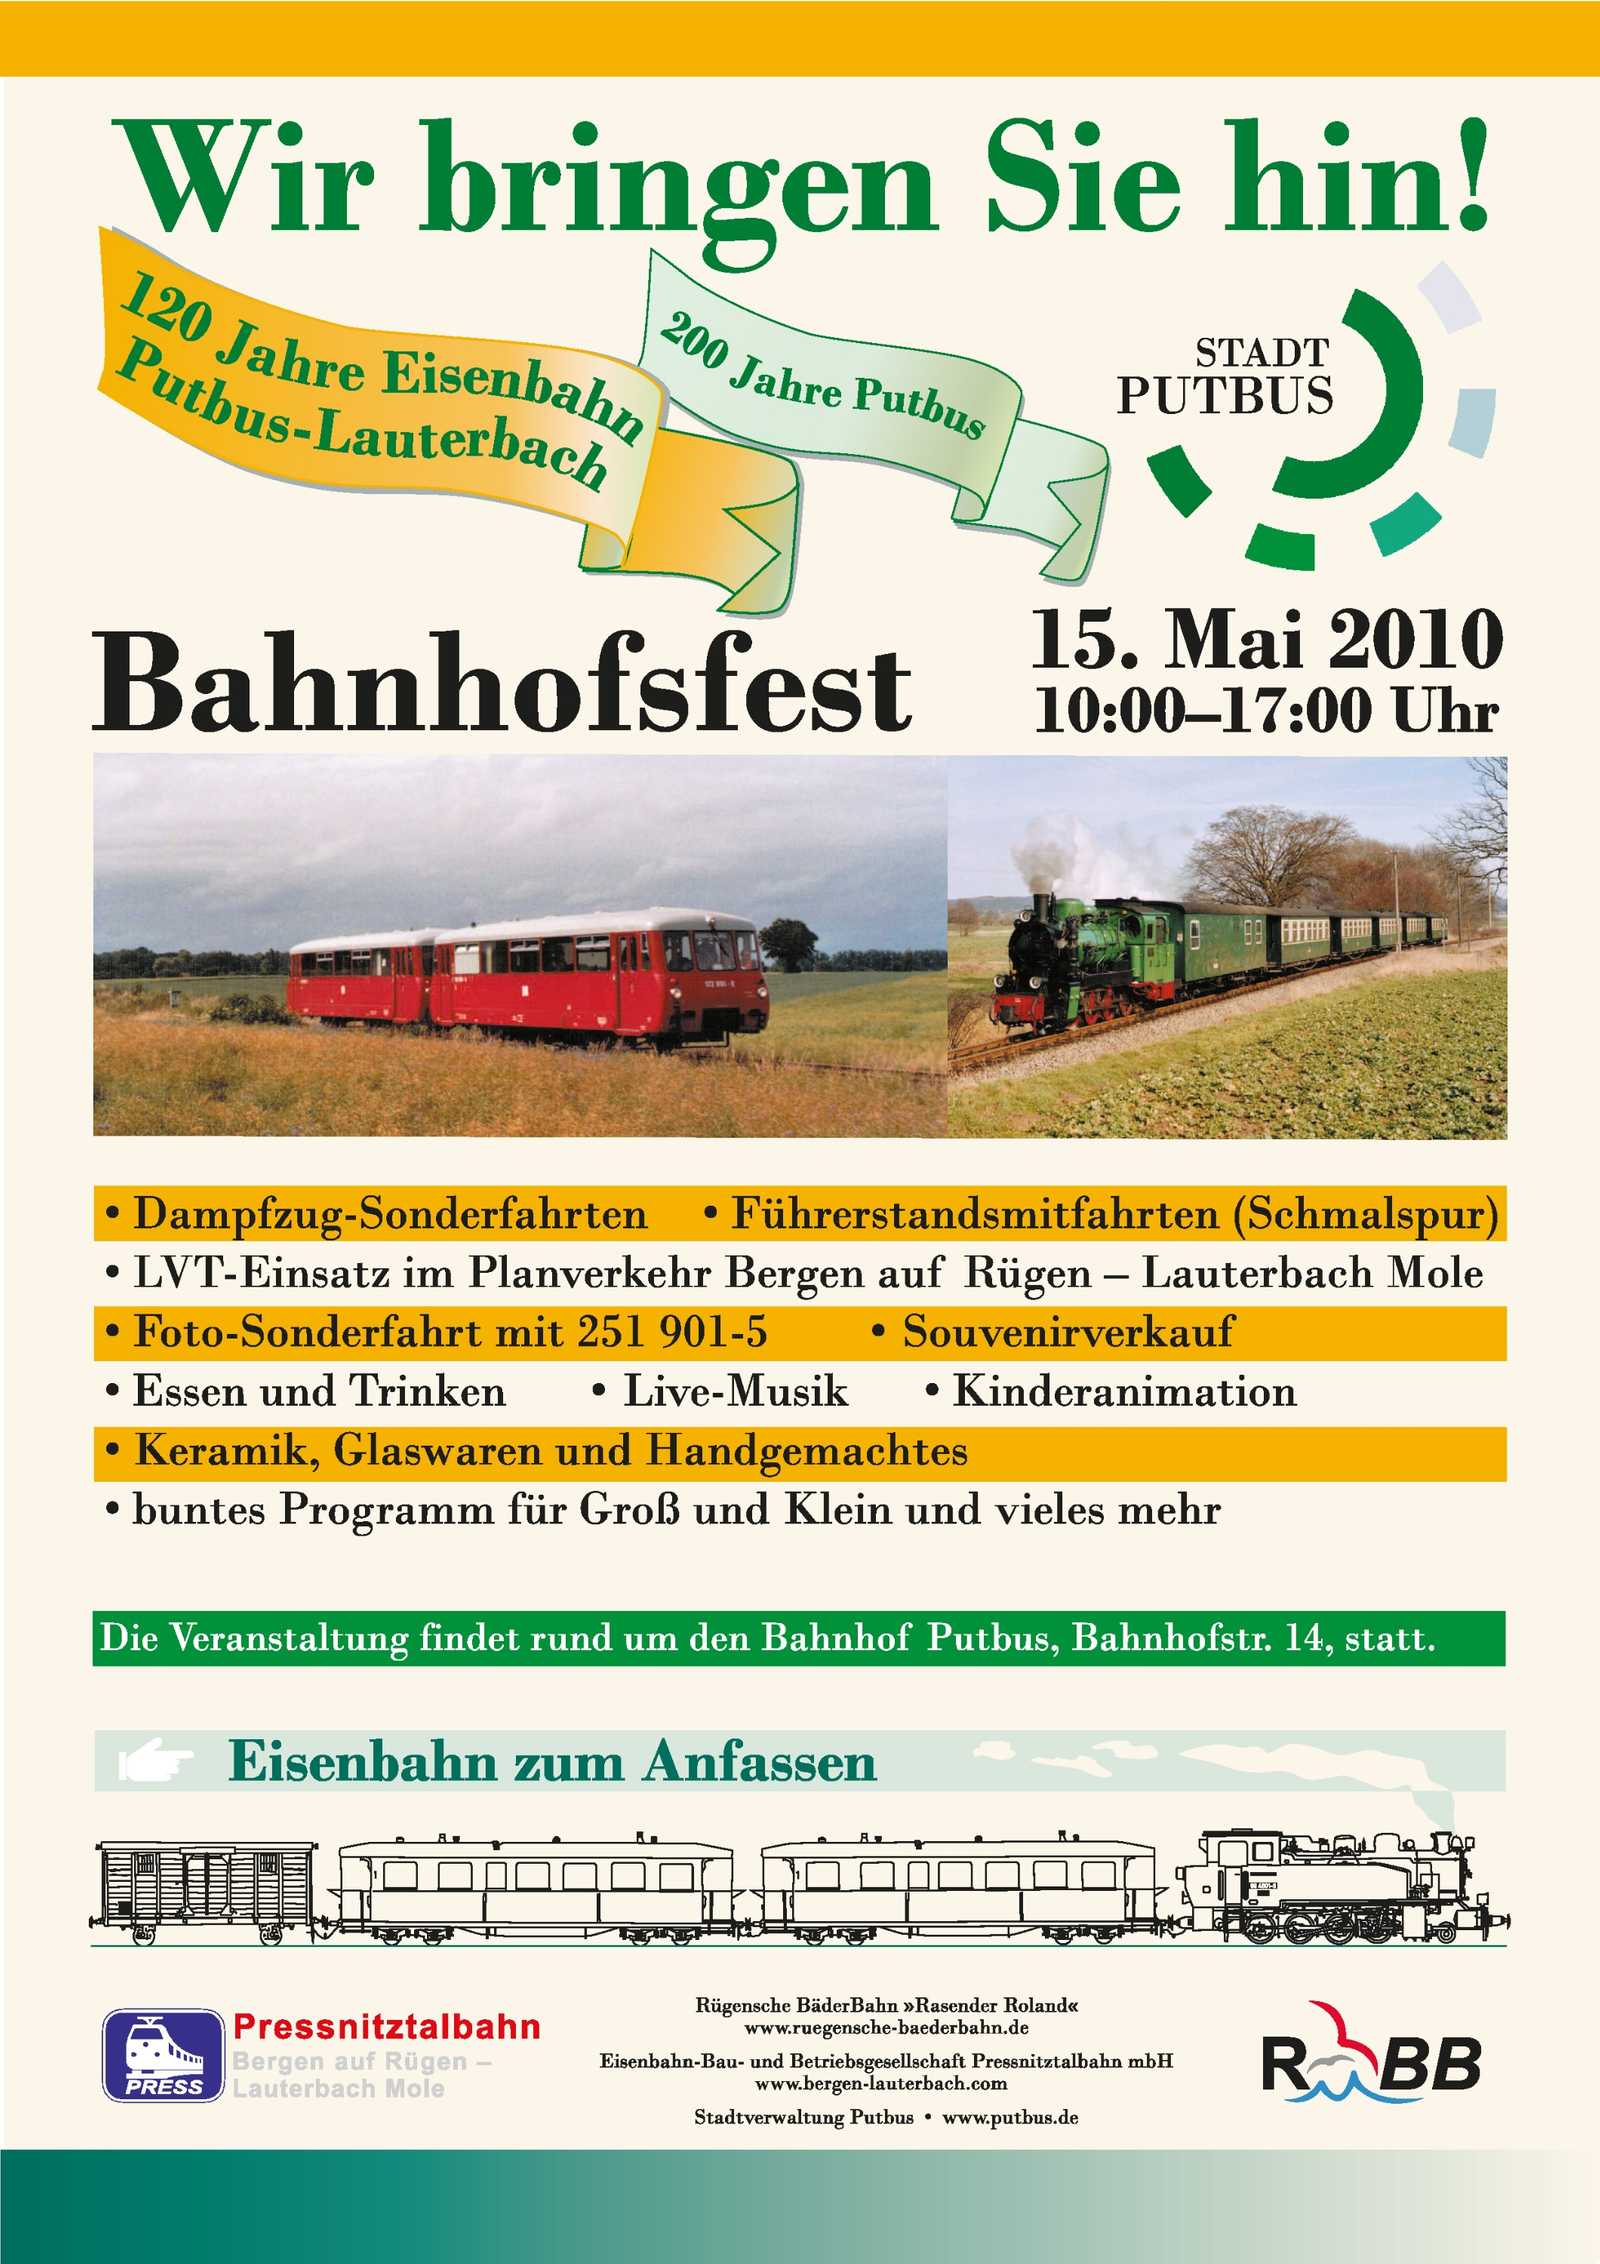 Veranstaltungsankündigung 15. Mai 2010 zum Bahnhofsfest Putbus